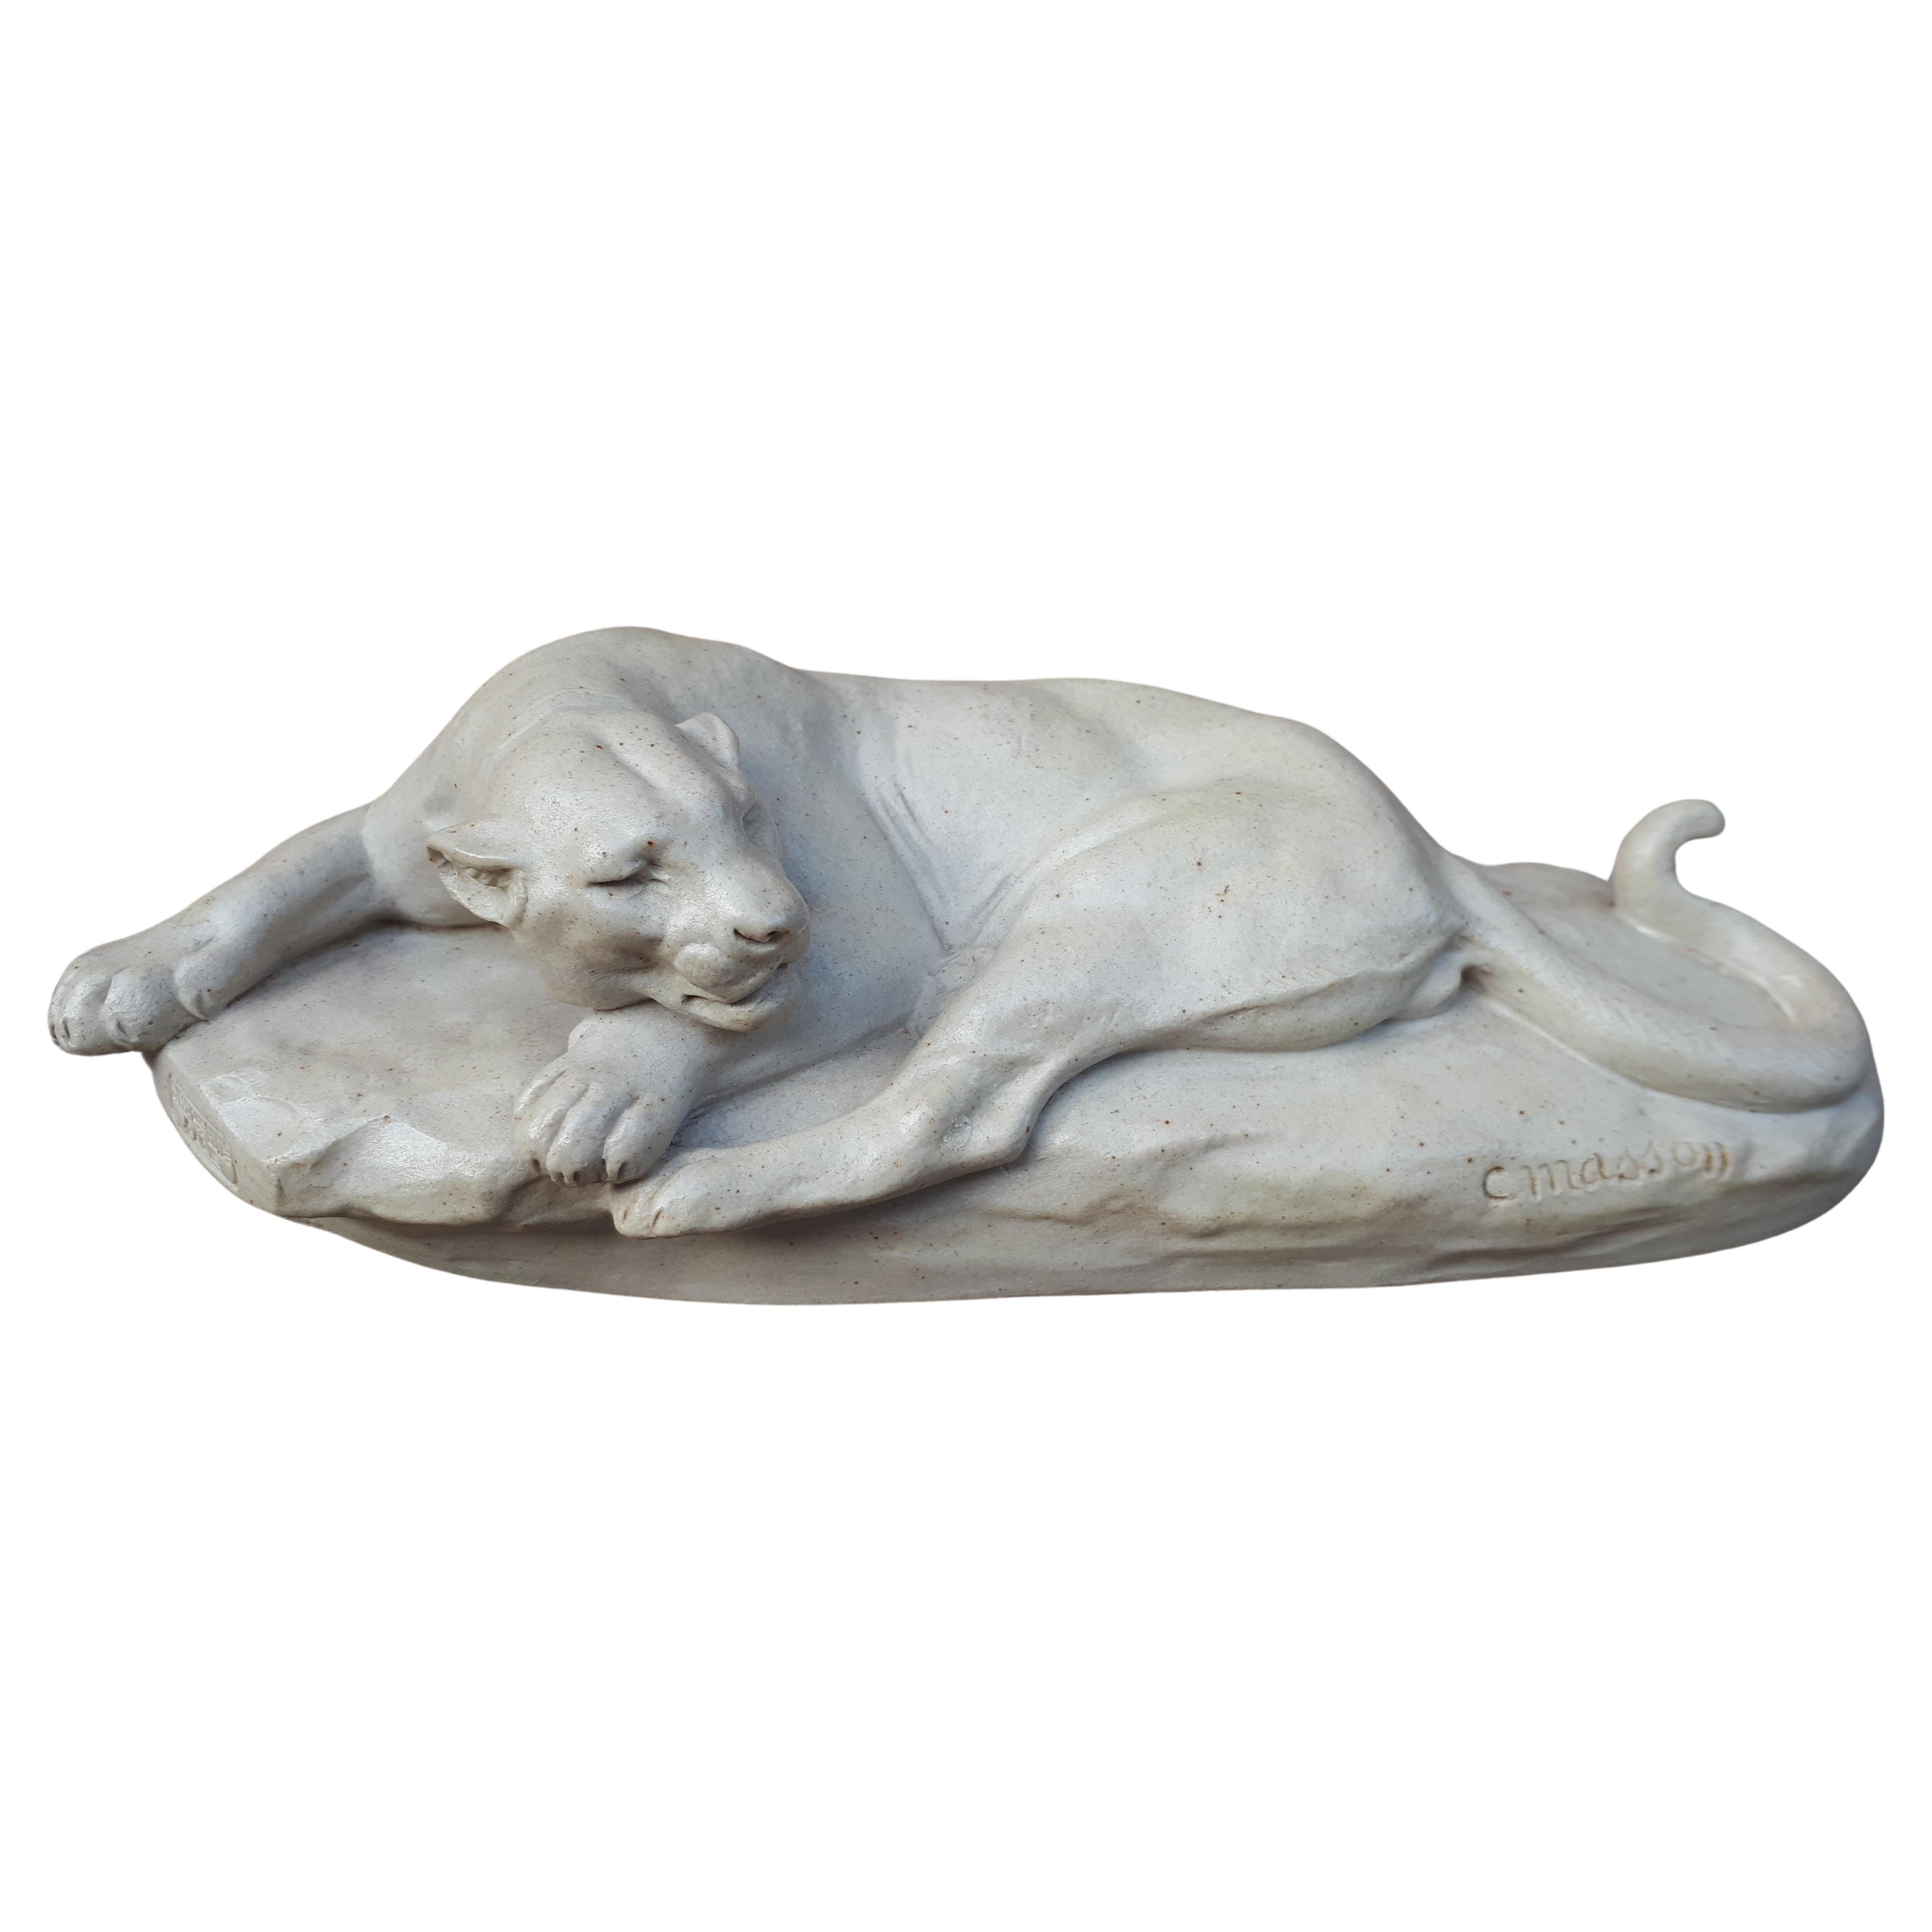 Sculpture d'une lionne couchée, par Clovis Edmond Masson (éditeurs Susse Frères)